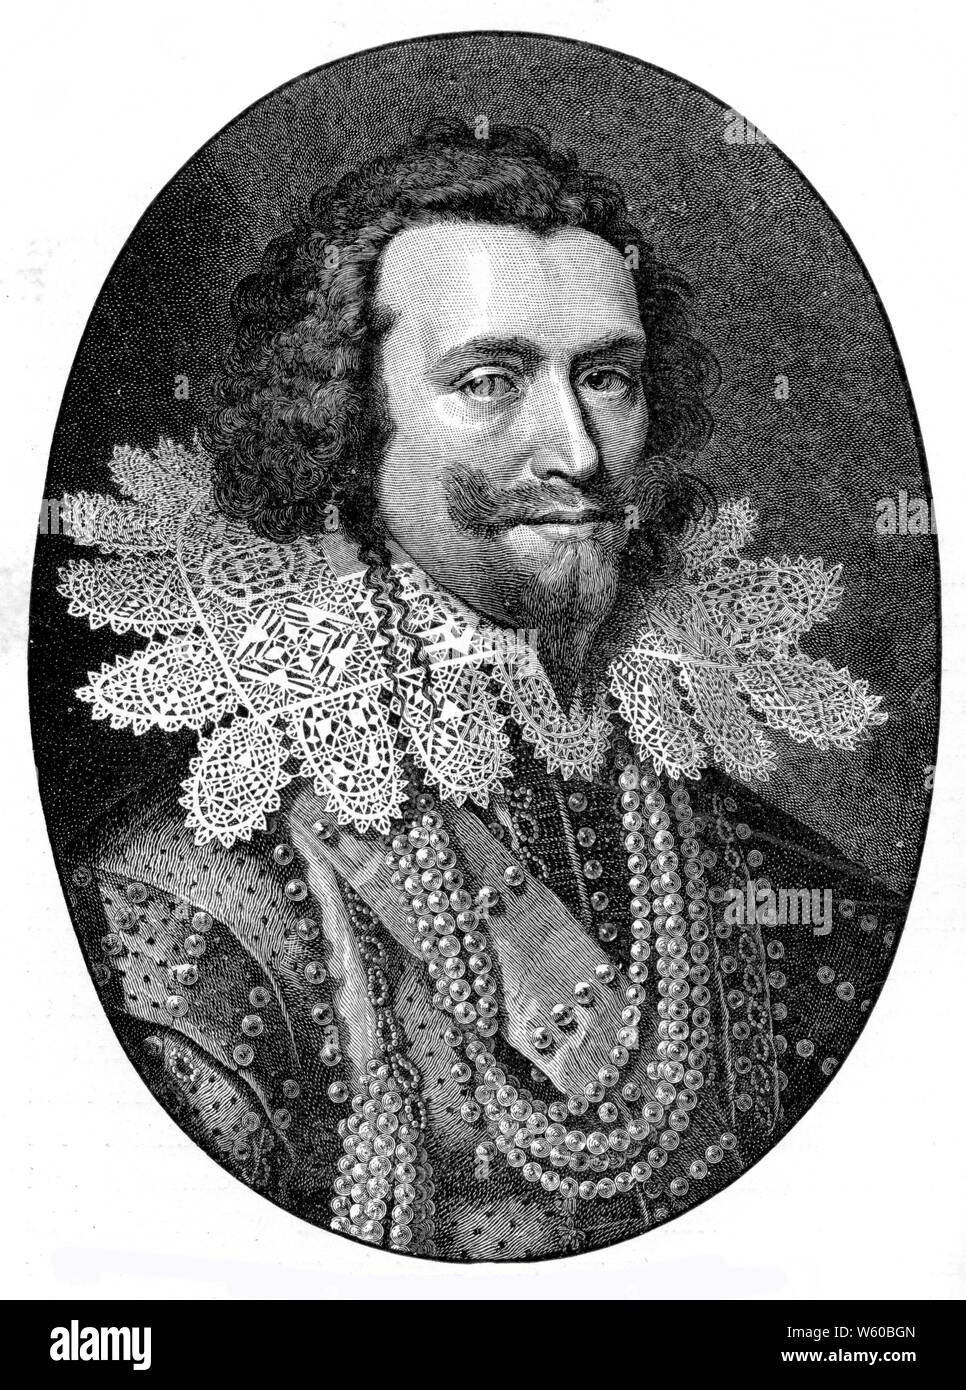 George Villiers, premier duc de Buckingham, c1626. Par William Jacobszoon Delff (1580-1638). Après Michiel Janszoon van Mierevelt (1566-1641). George Villiers, premier duc de Buckingham (1592-1628), courtier anglais, homme d'État et protecteur des arts Banque D'Images